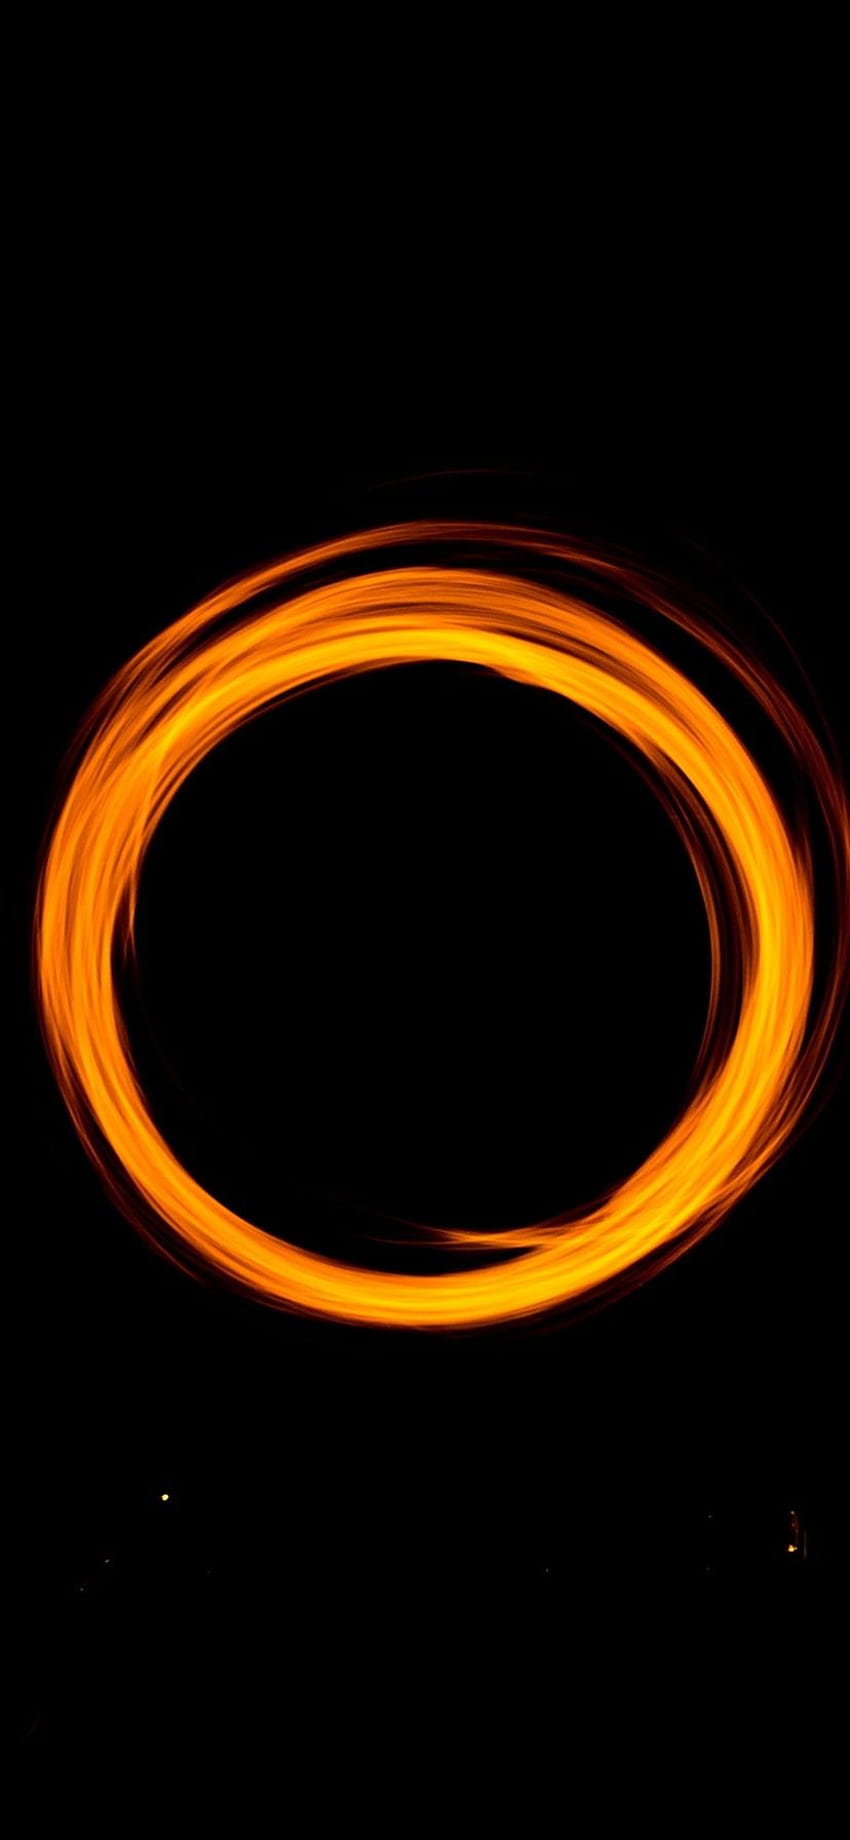 Pomarańczowy jasny krąg, czarne tło 2880x1800, jasny pierścień Tapeta na telefon HD